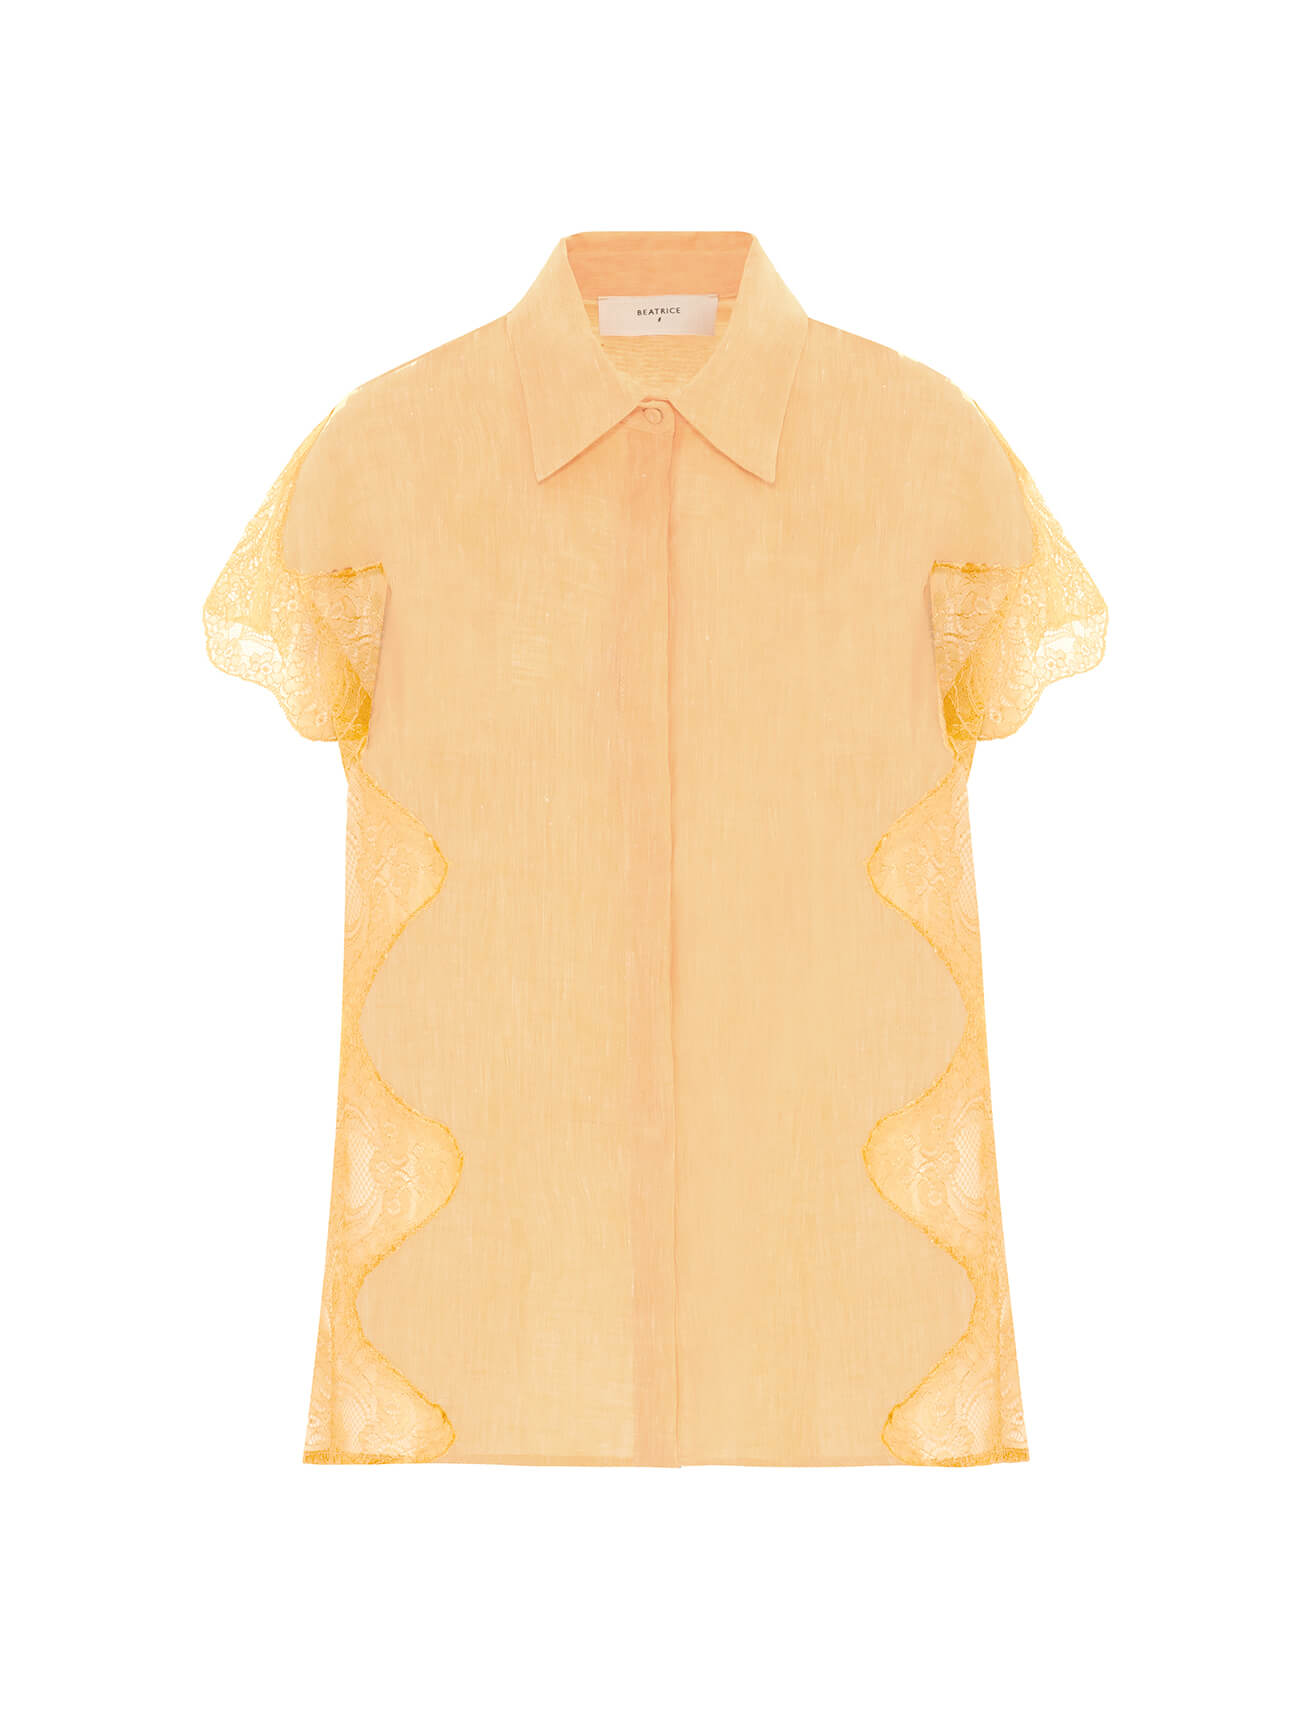 hemp mango shirt with lace inserts